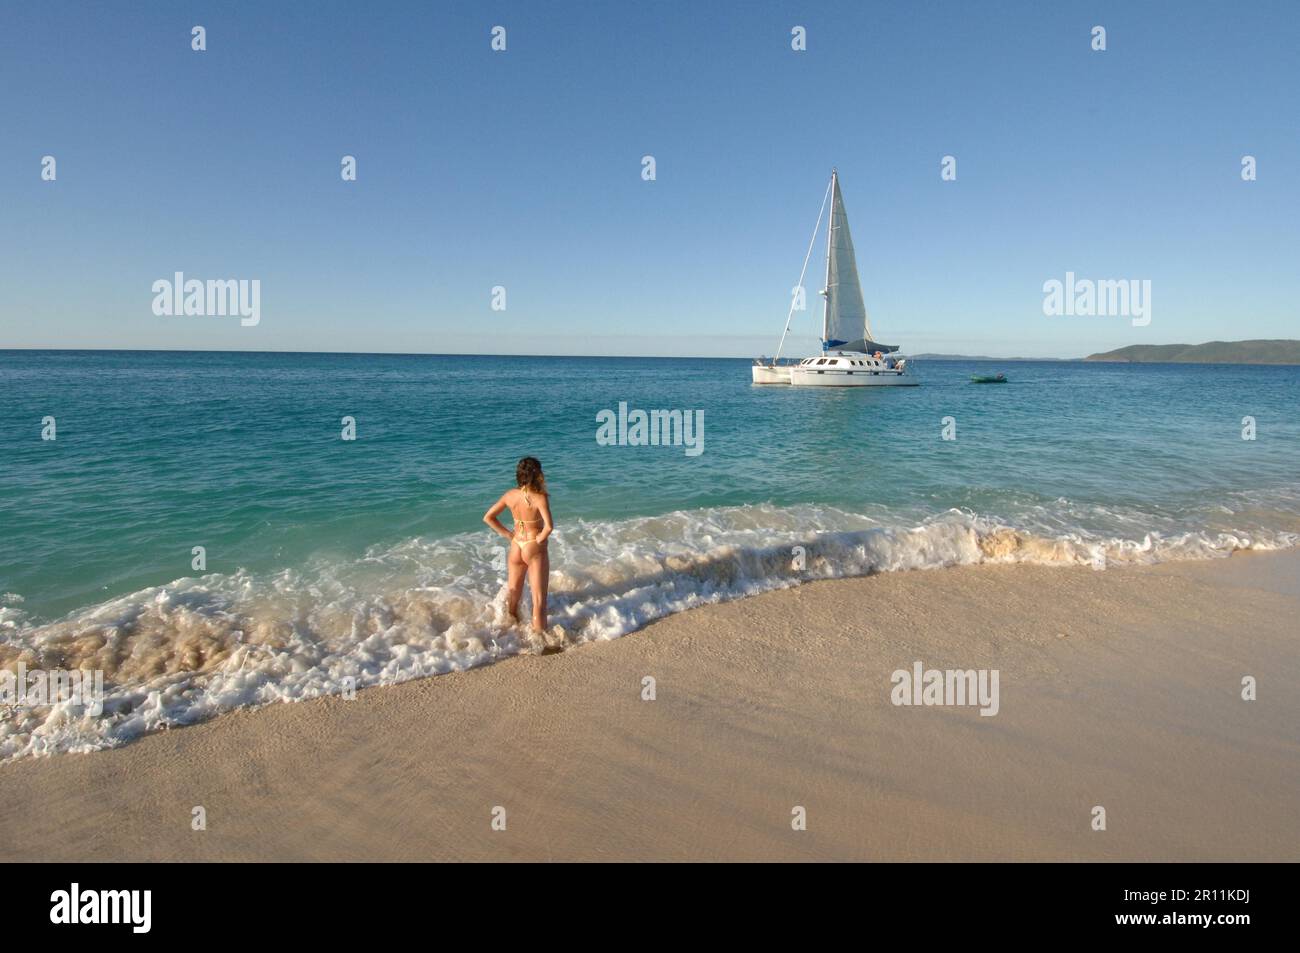 Donna in spiaggia che guarda barca a vela, vacanze al mare, vacanze, barca, barca a vela, marinaio, catamarano, mare del sud, spiaggia da sogno Foto Stock